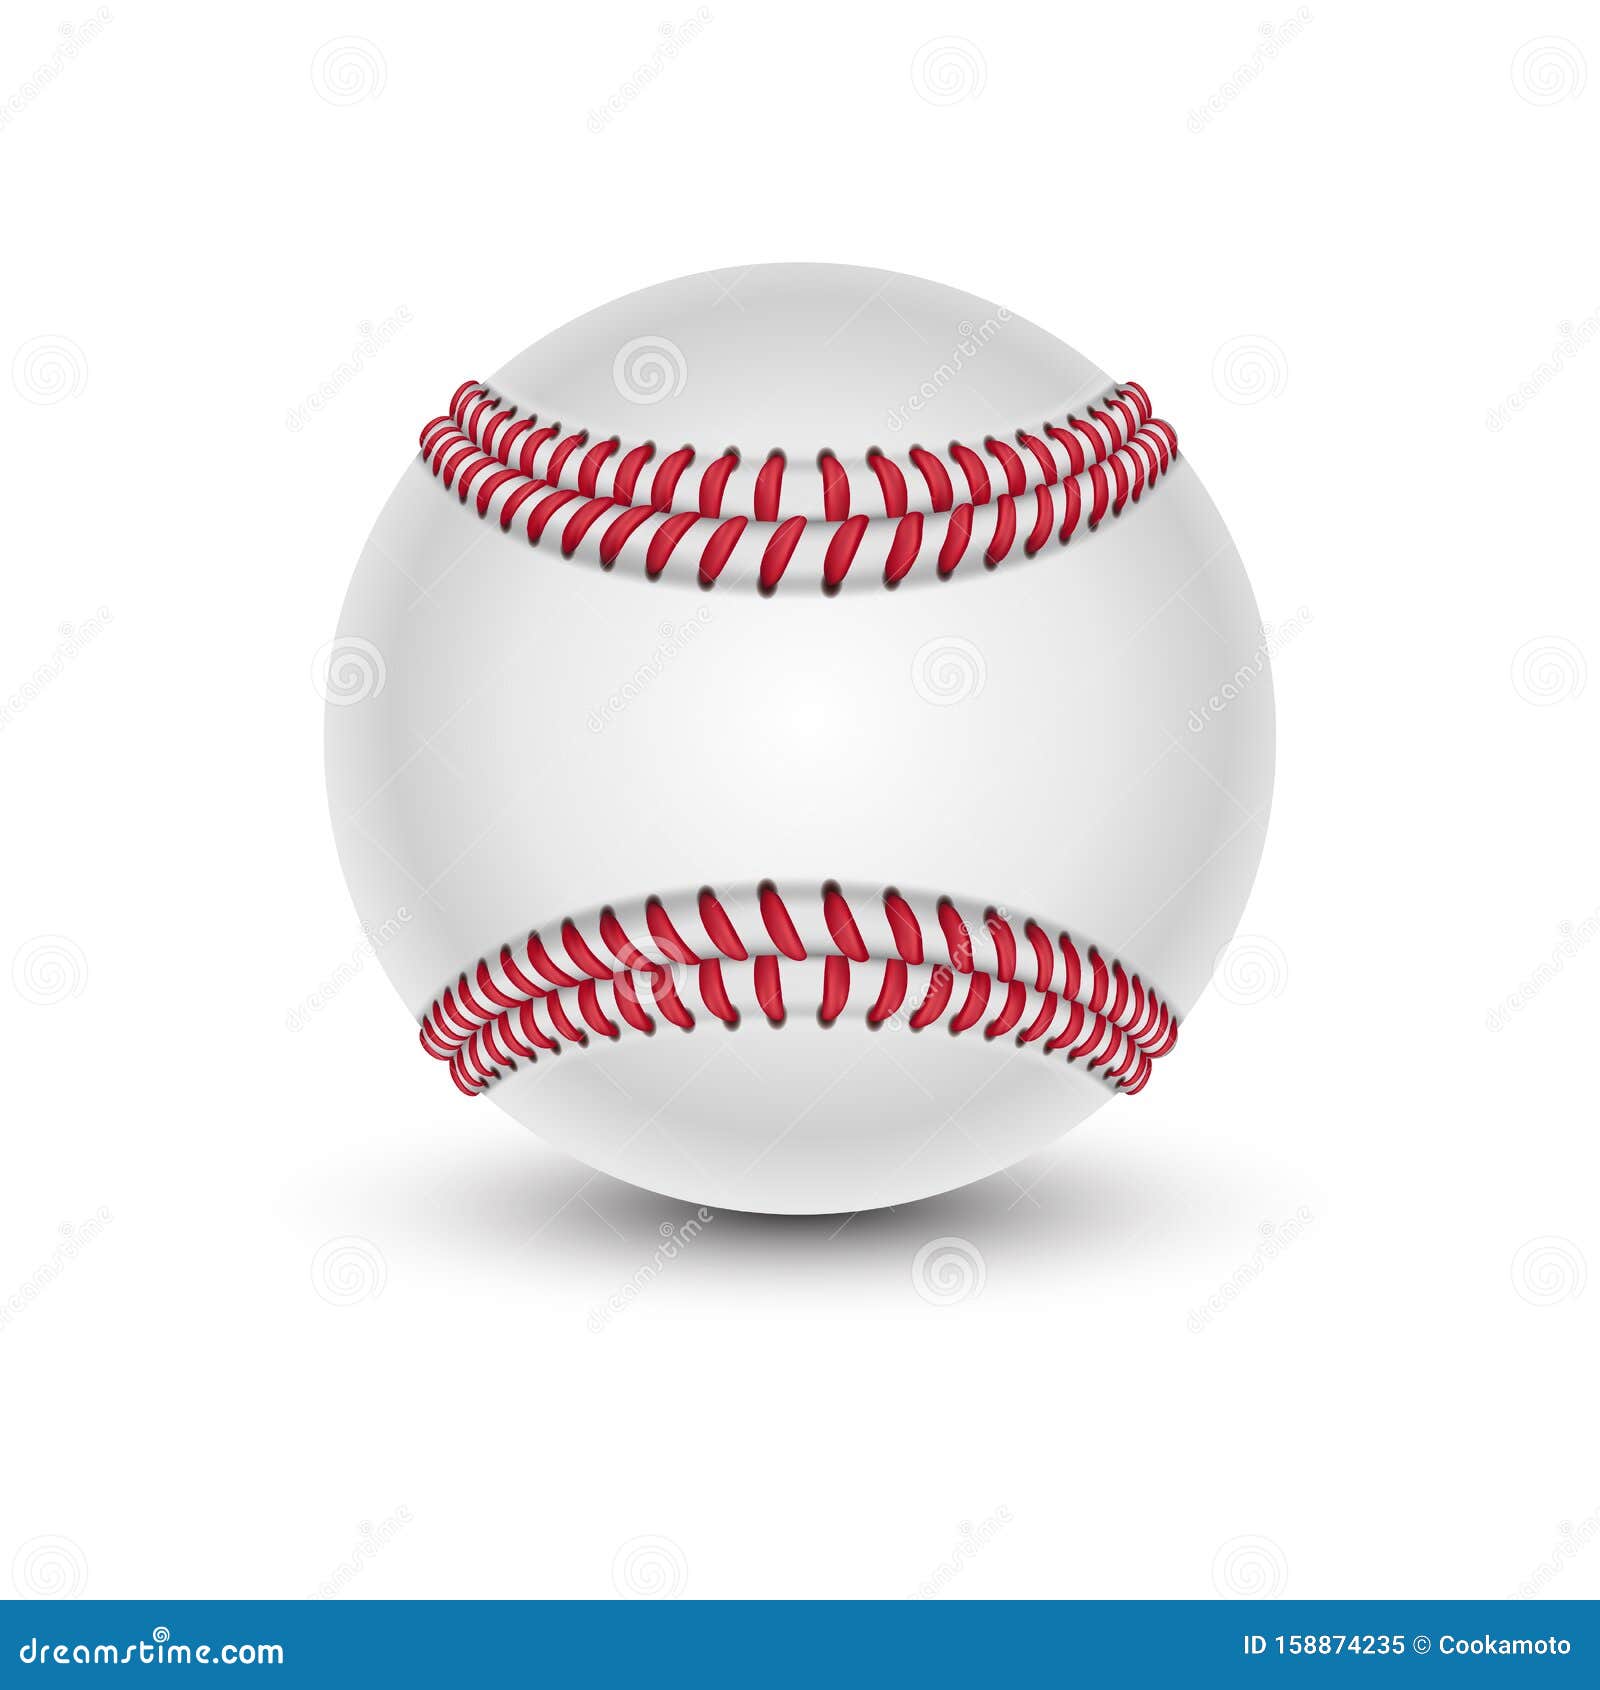 baseball ball with shade. softball or hardball